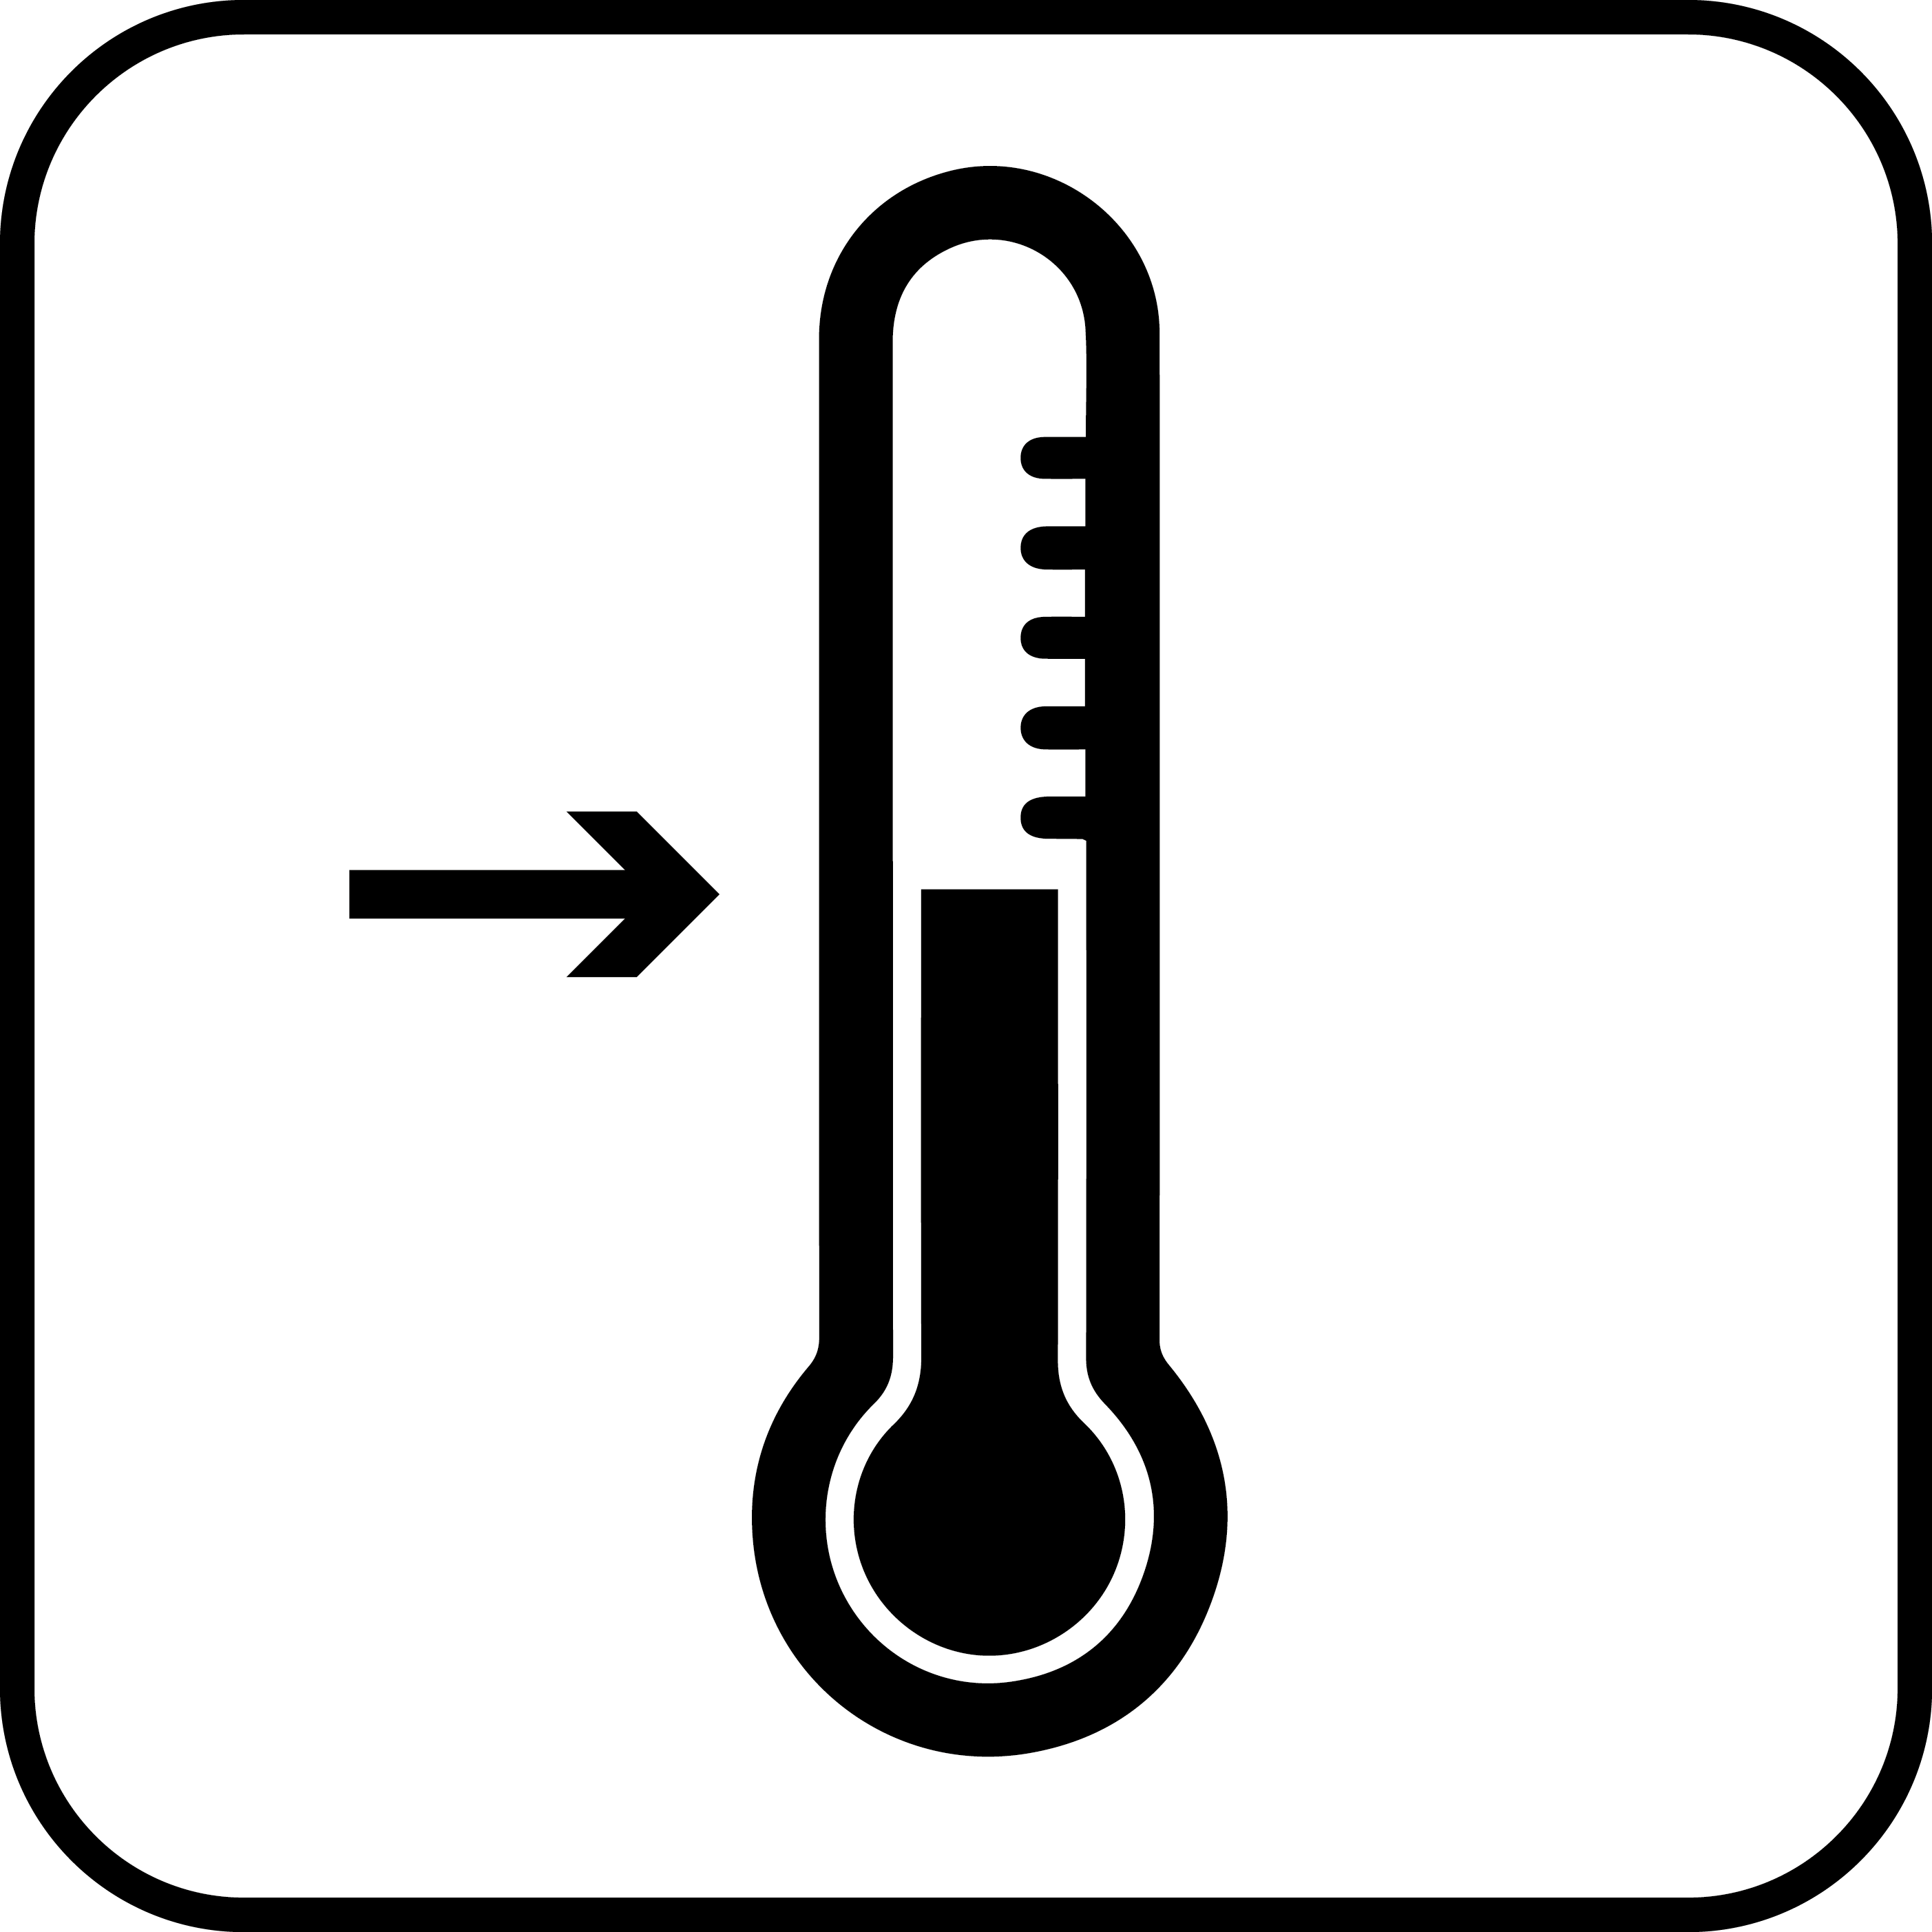 Geringe temperatuurschommelingen